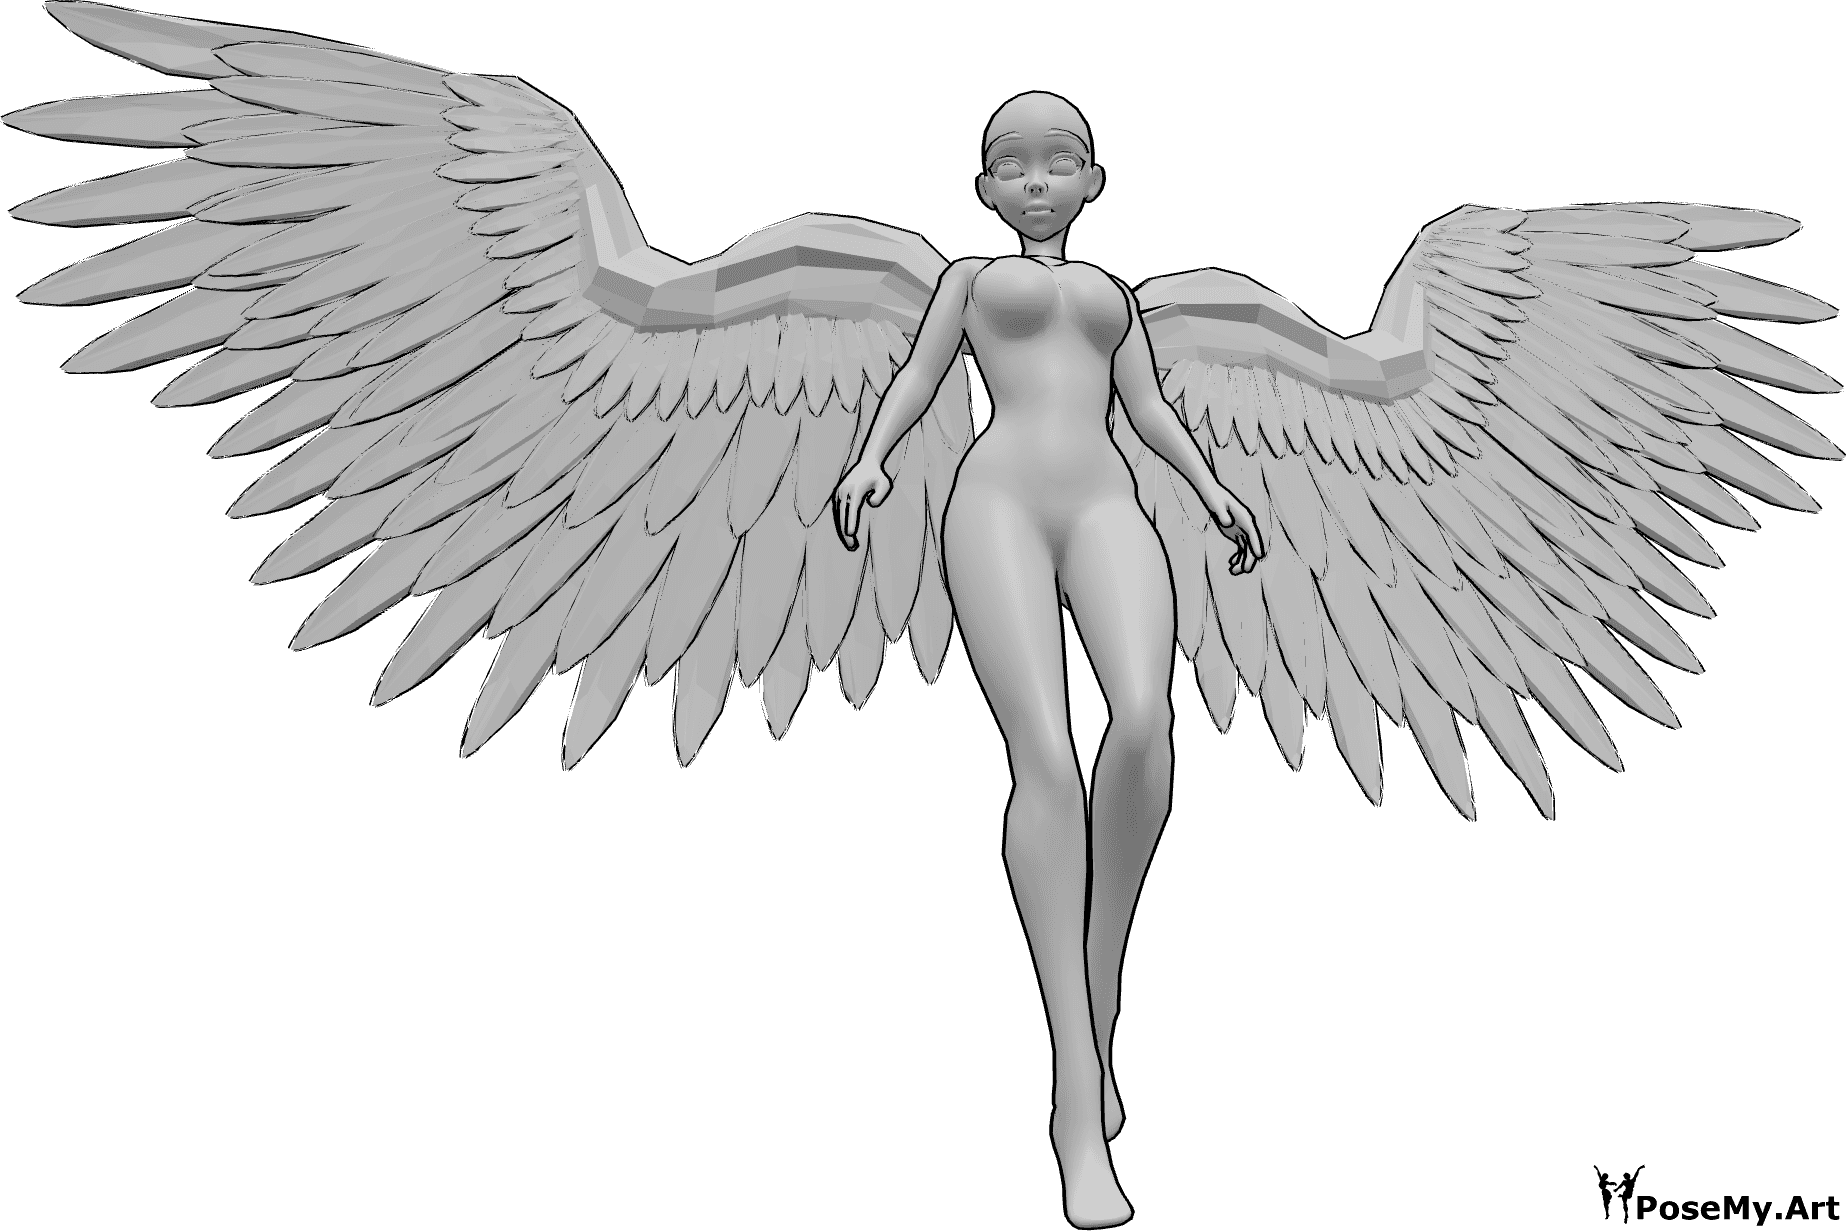 Referencia de poses- Mirando hacia abajo pose de vuelo - Anime femenino con alas de ángel está volando y mirando hacia abajo, anime pose de vuelo